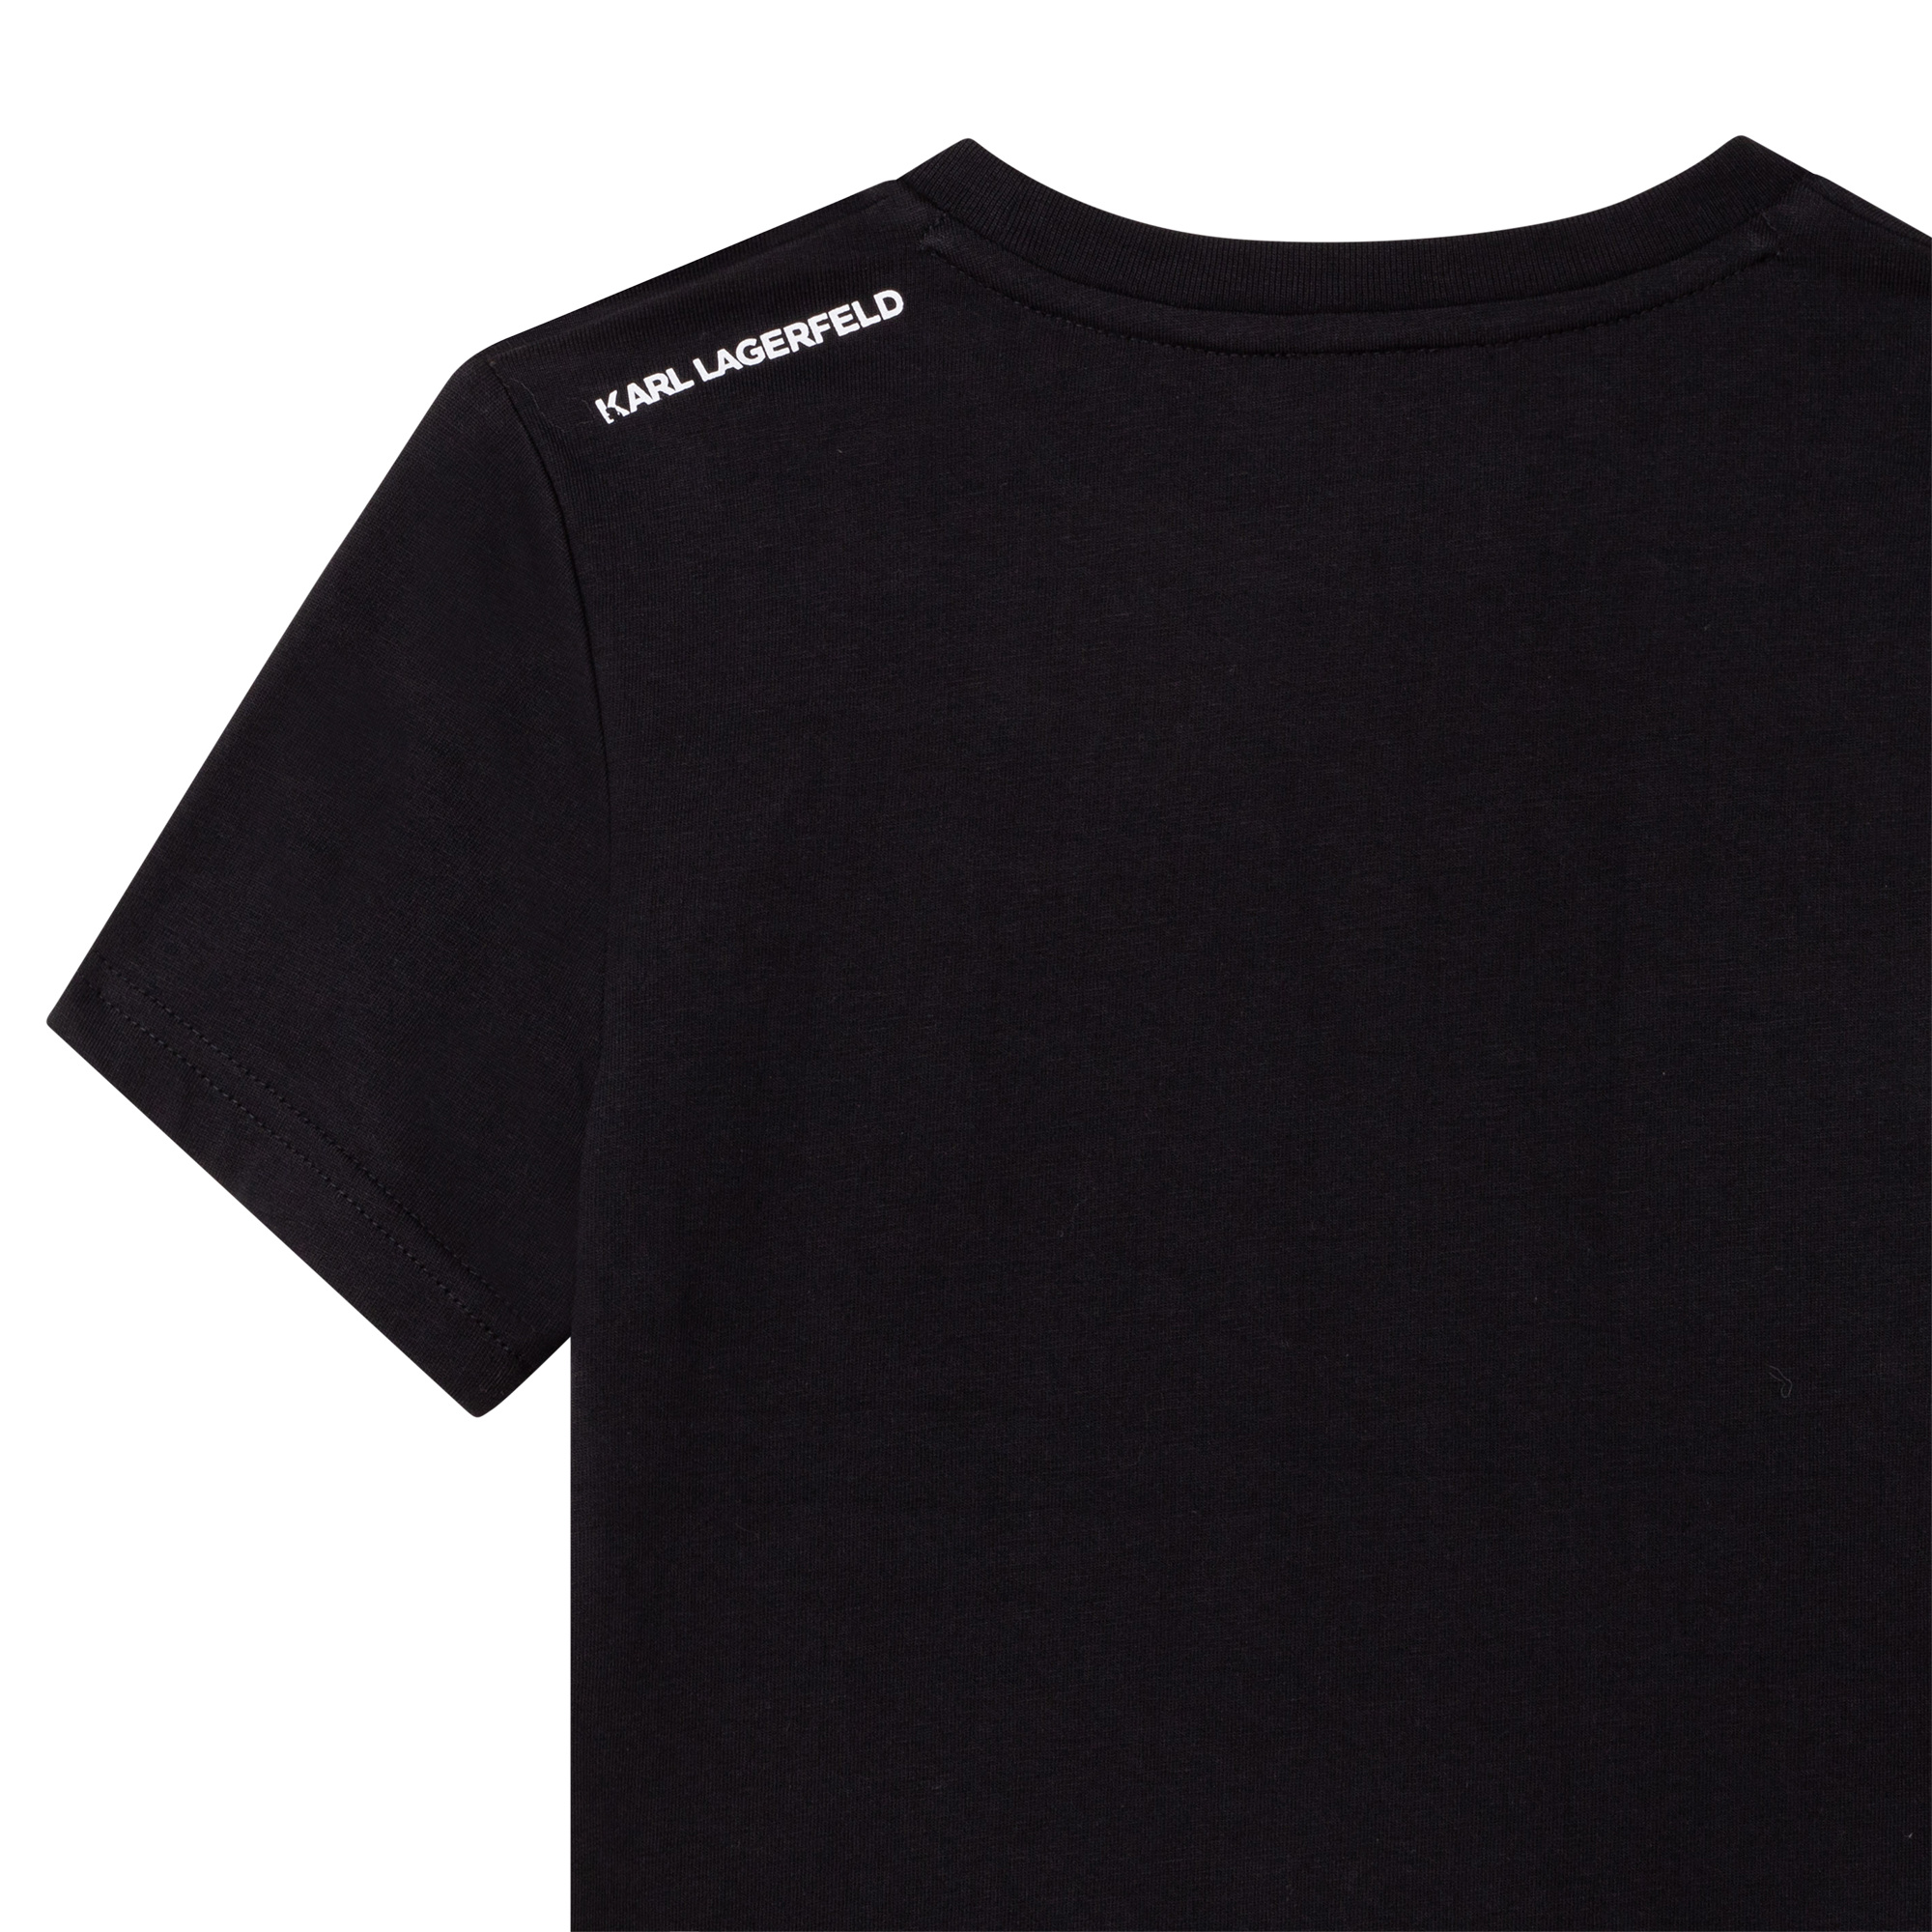 KARL LAGERFELD KIDS T-Shirt schwarz mit iconic Karl Lagerfeld logo -  Coolkids-Store